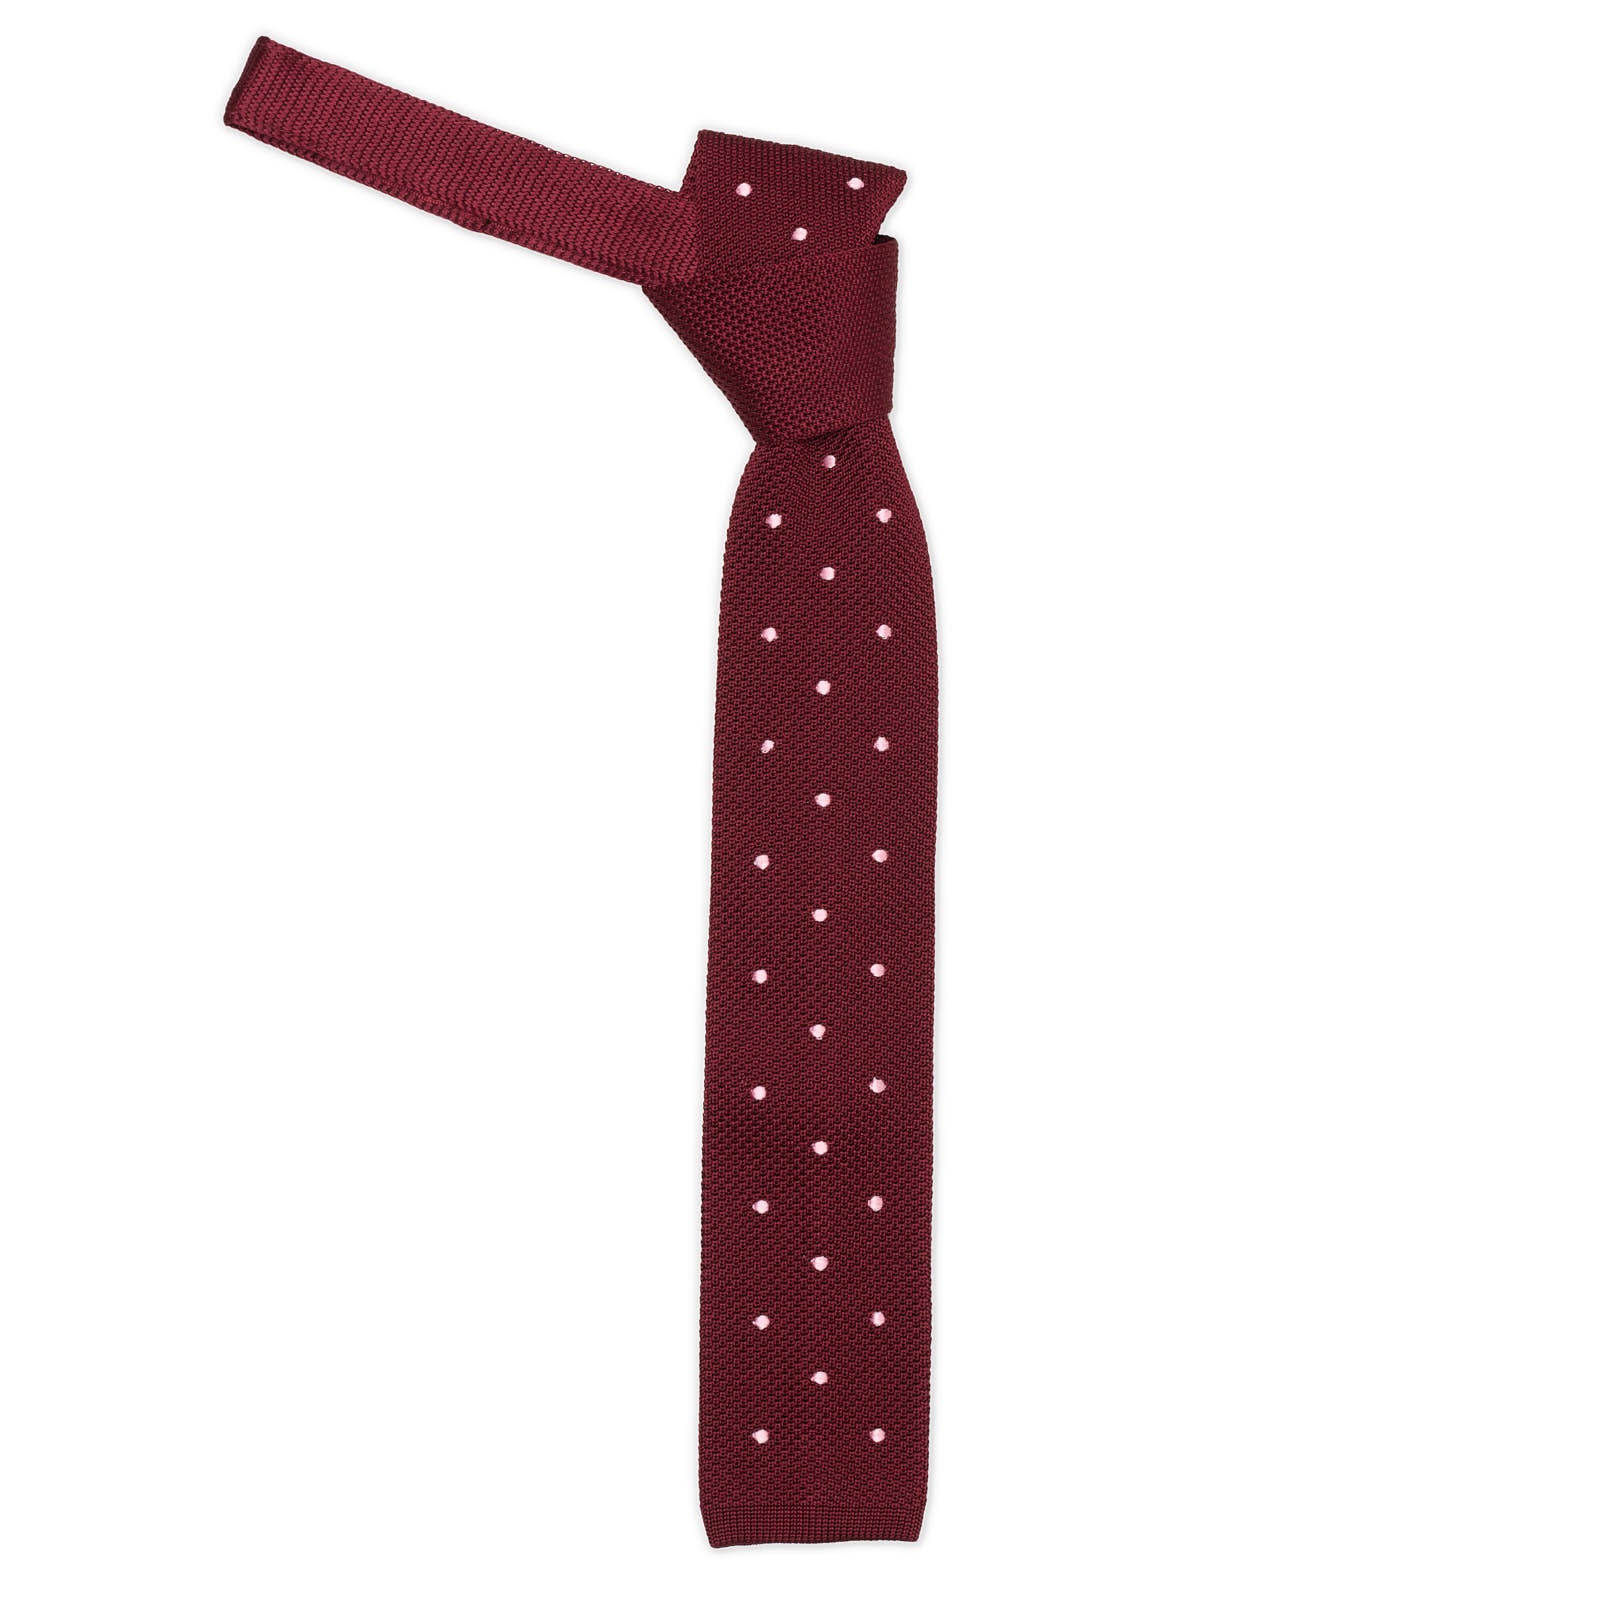 MATTABISCH FOR VANNUCI Burgundy Dotted Silk Knit Tie NEW